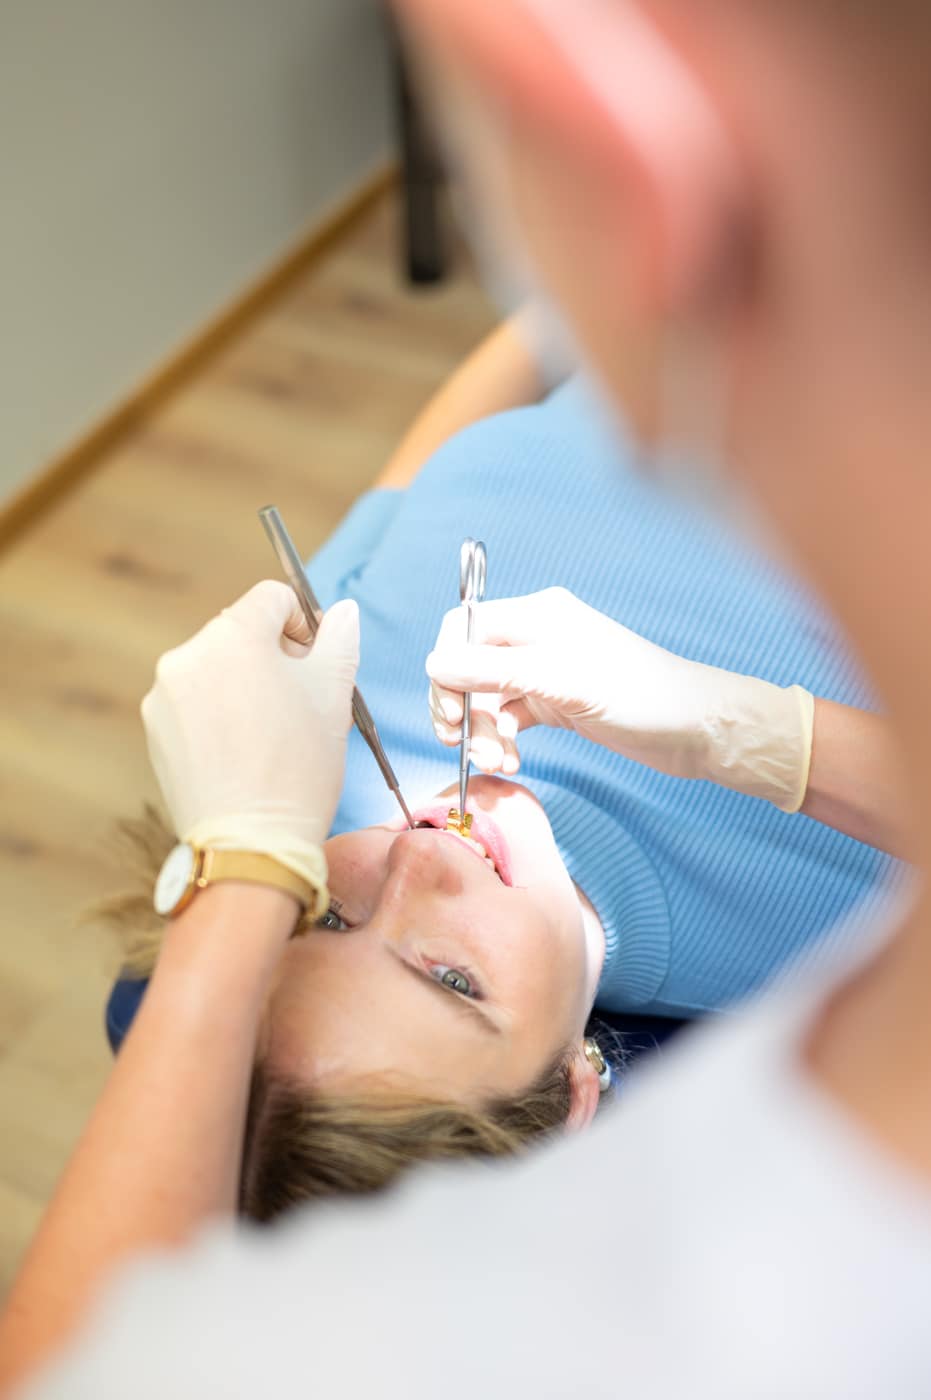 Zahnkorrektur - Meine Aligner Behandlung mit Spark startet